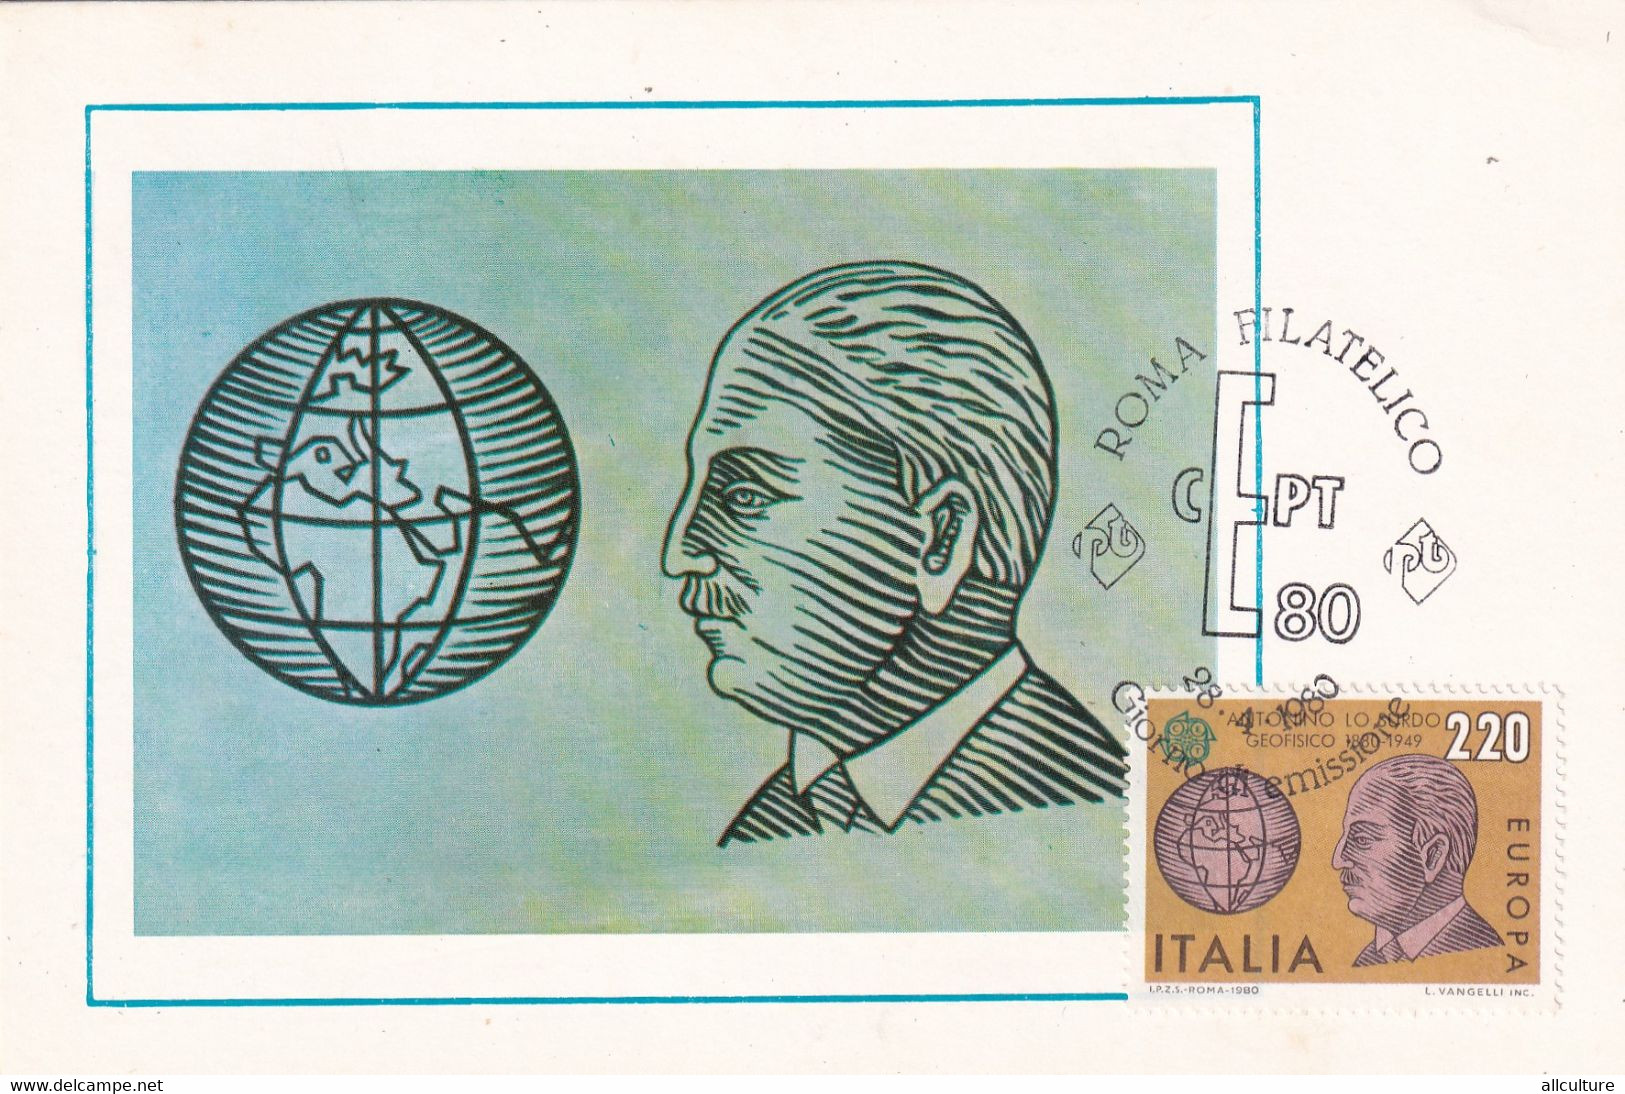 A10908- ANTONINO LO SURDO, GEOPHYSICAL, ROMA FILATELICO 1980 MAXIMUM CARD ITALIA  USED STAMPS - Maximum Cards